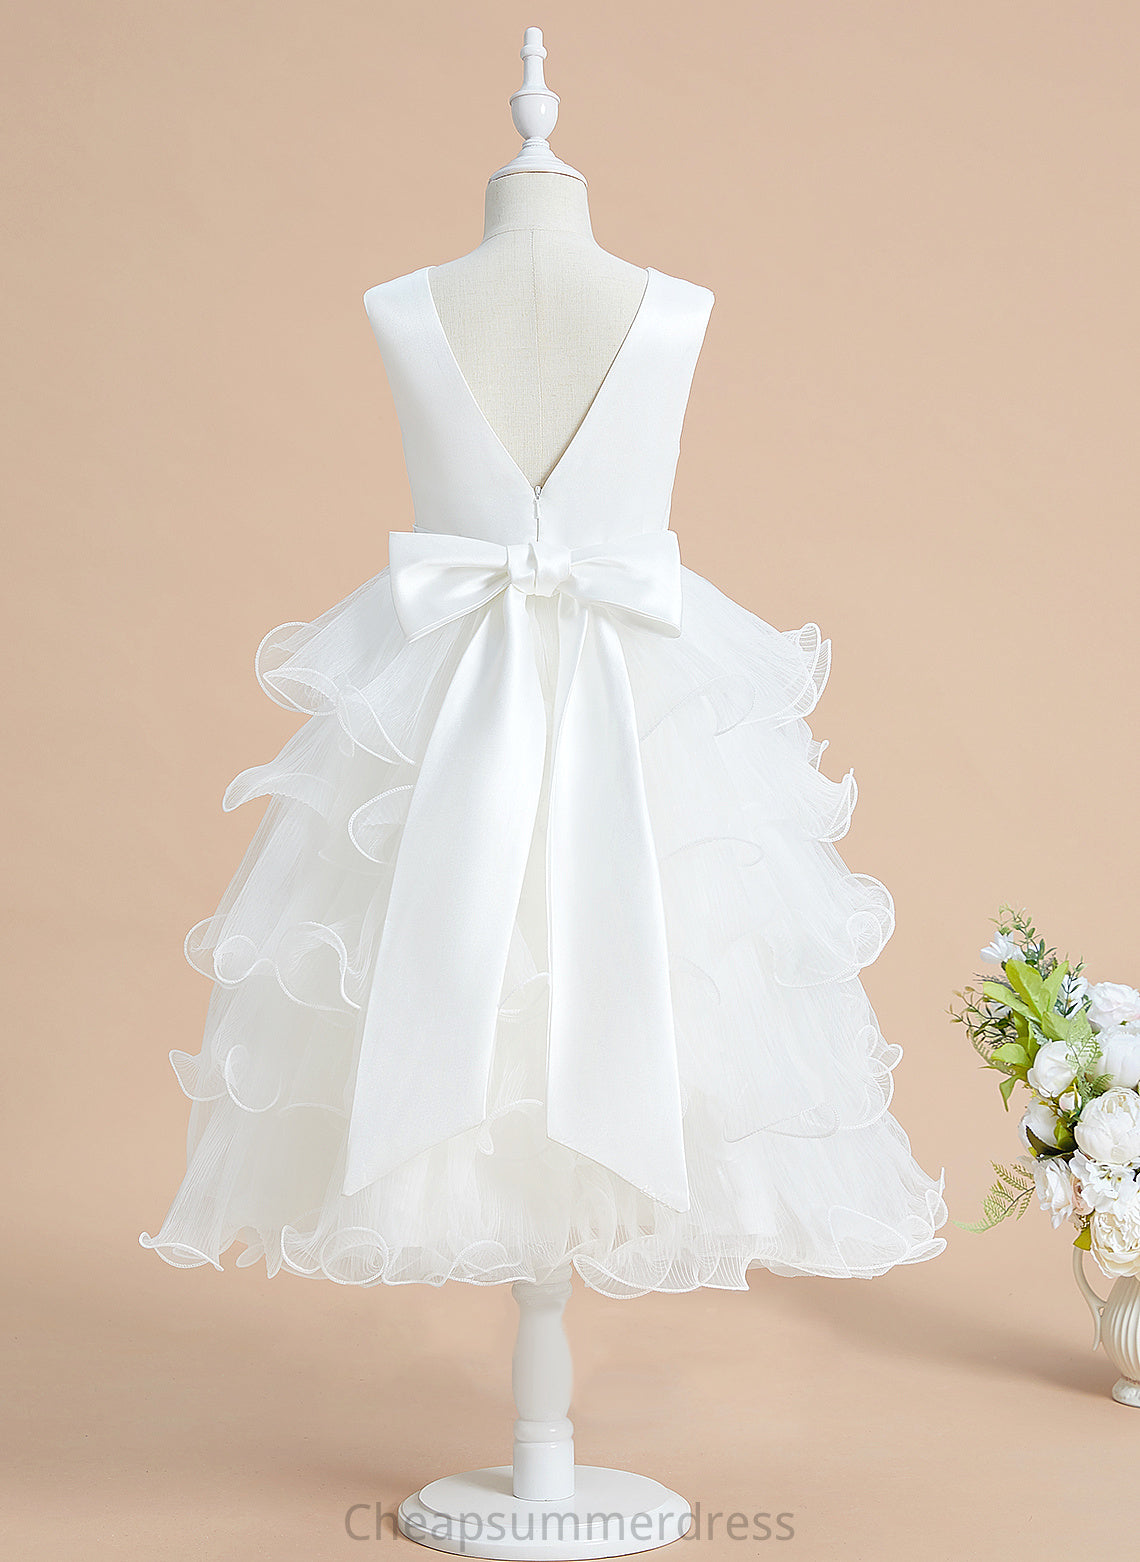 - Dress Girl Sleeveless With Sue V-neck Ball-Gown/Princess Tea-length Bow(s) Flower Girl Dresses Satin/Tulle Flower